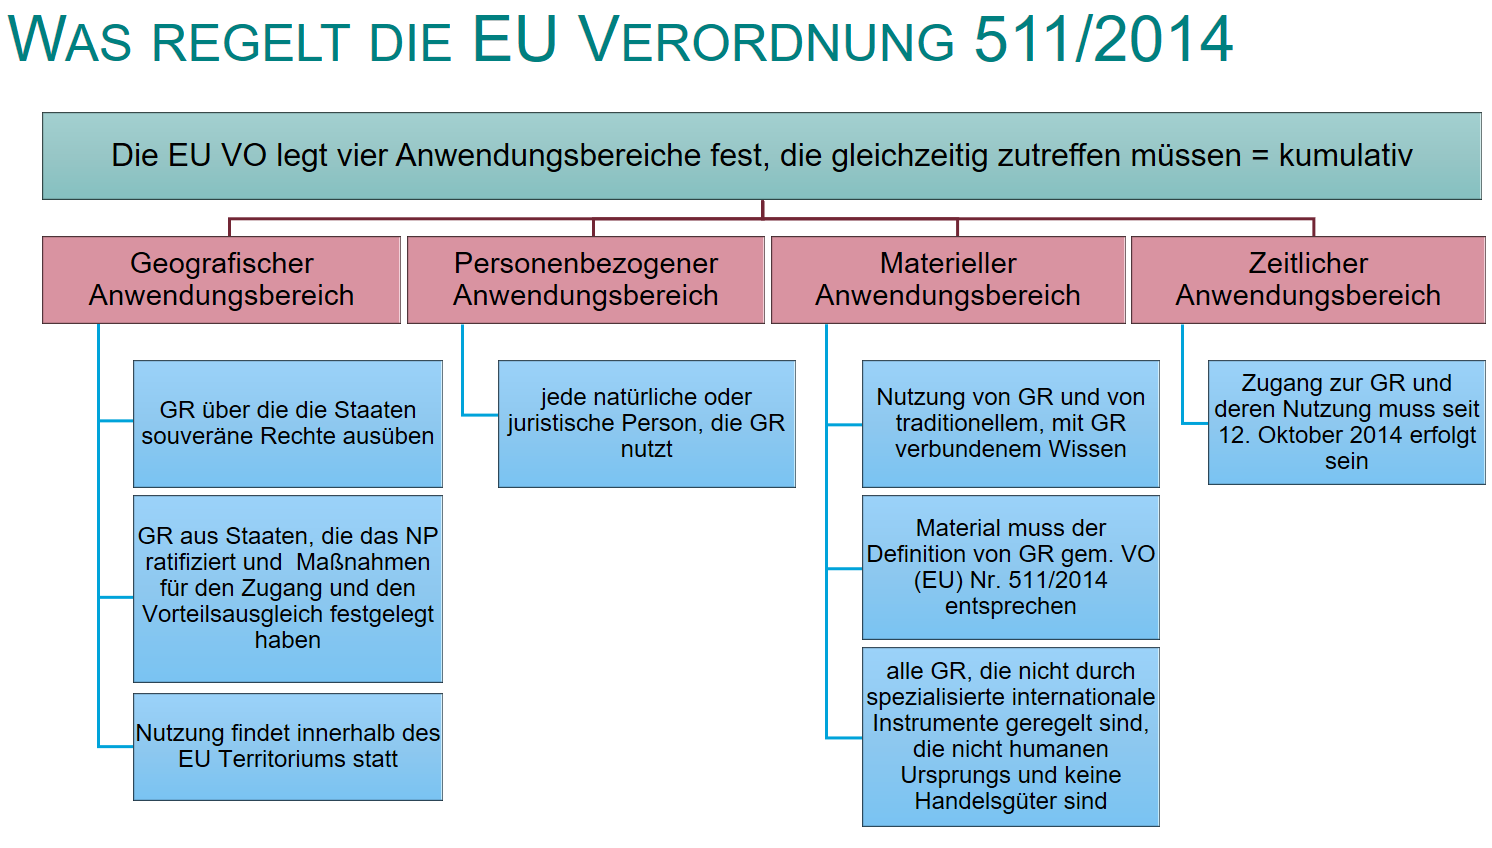 Die Grafik erläutert die Reglung der EU Verordnung 511/2014.